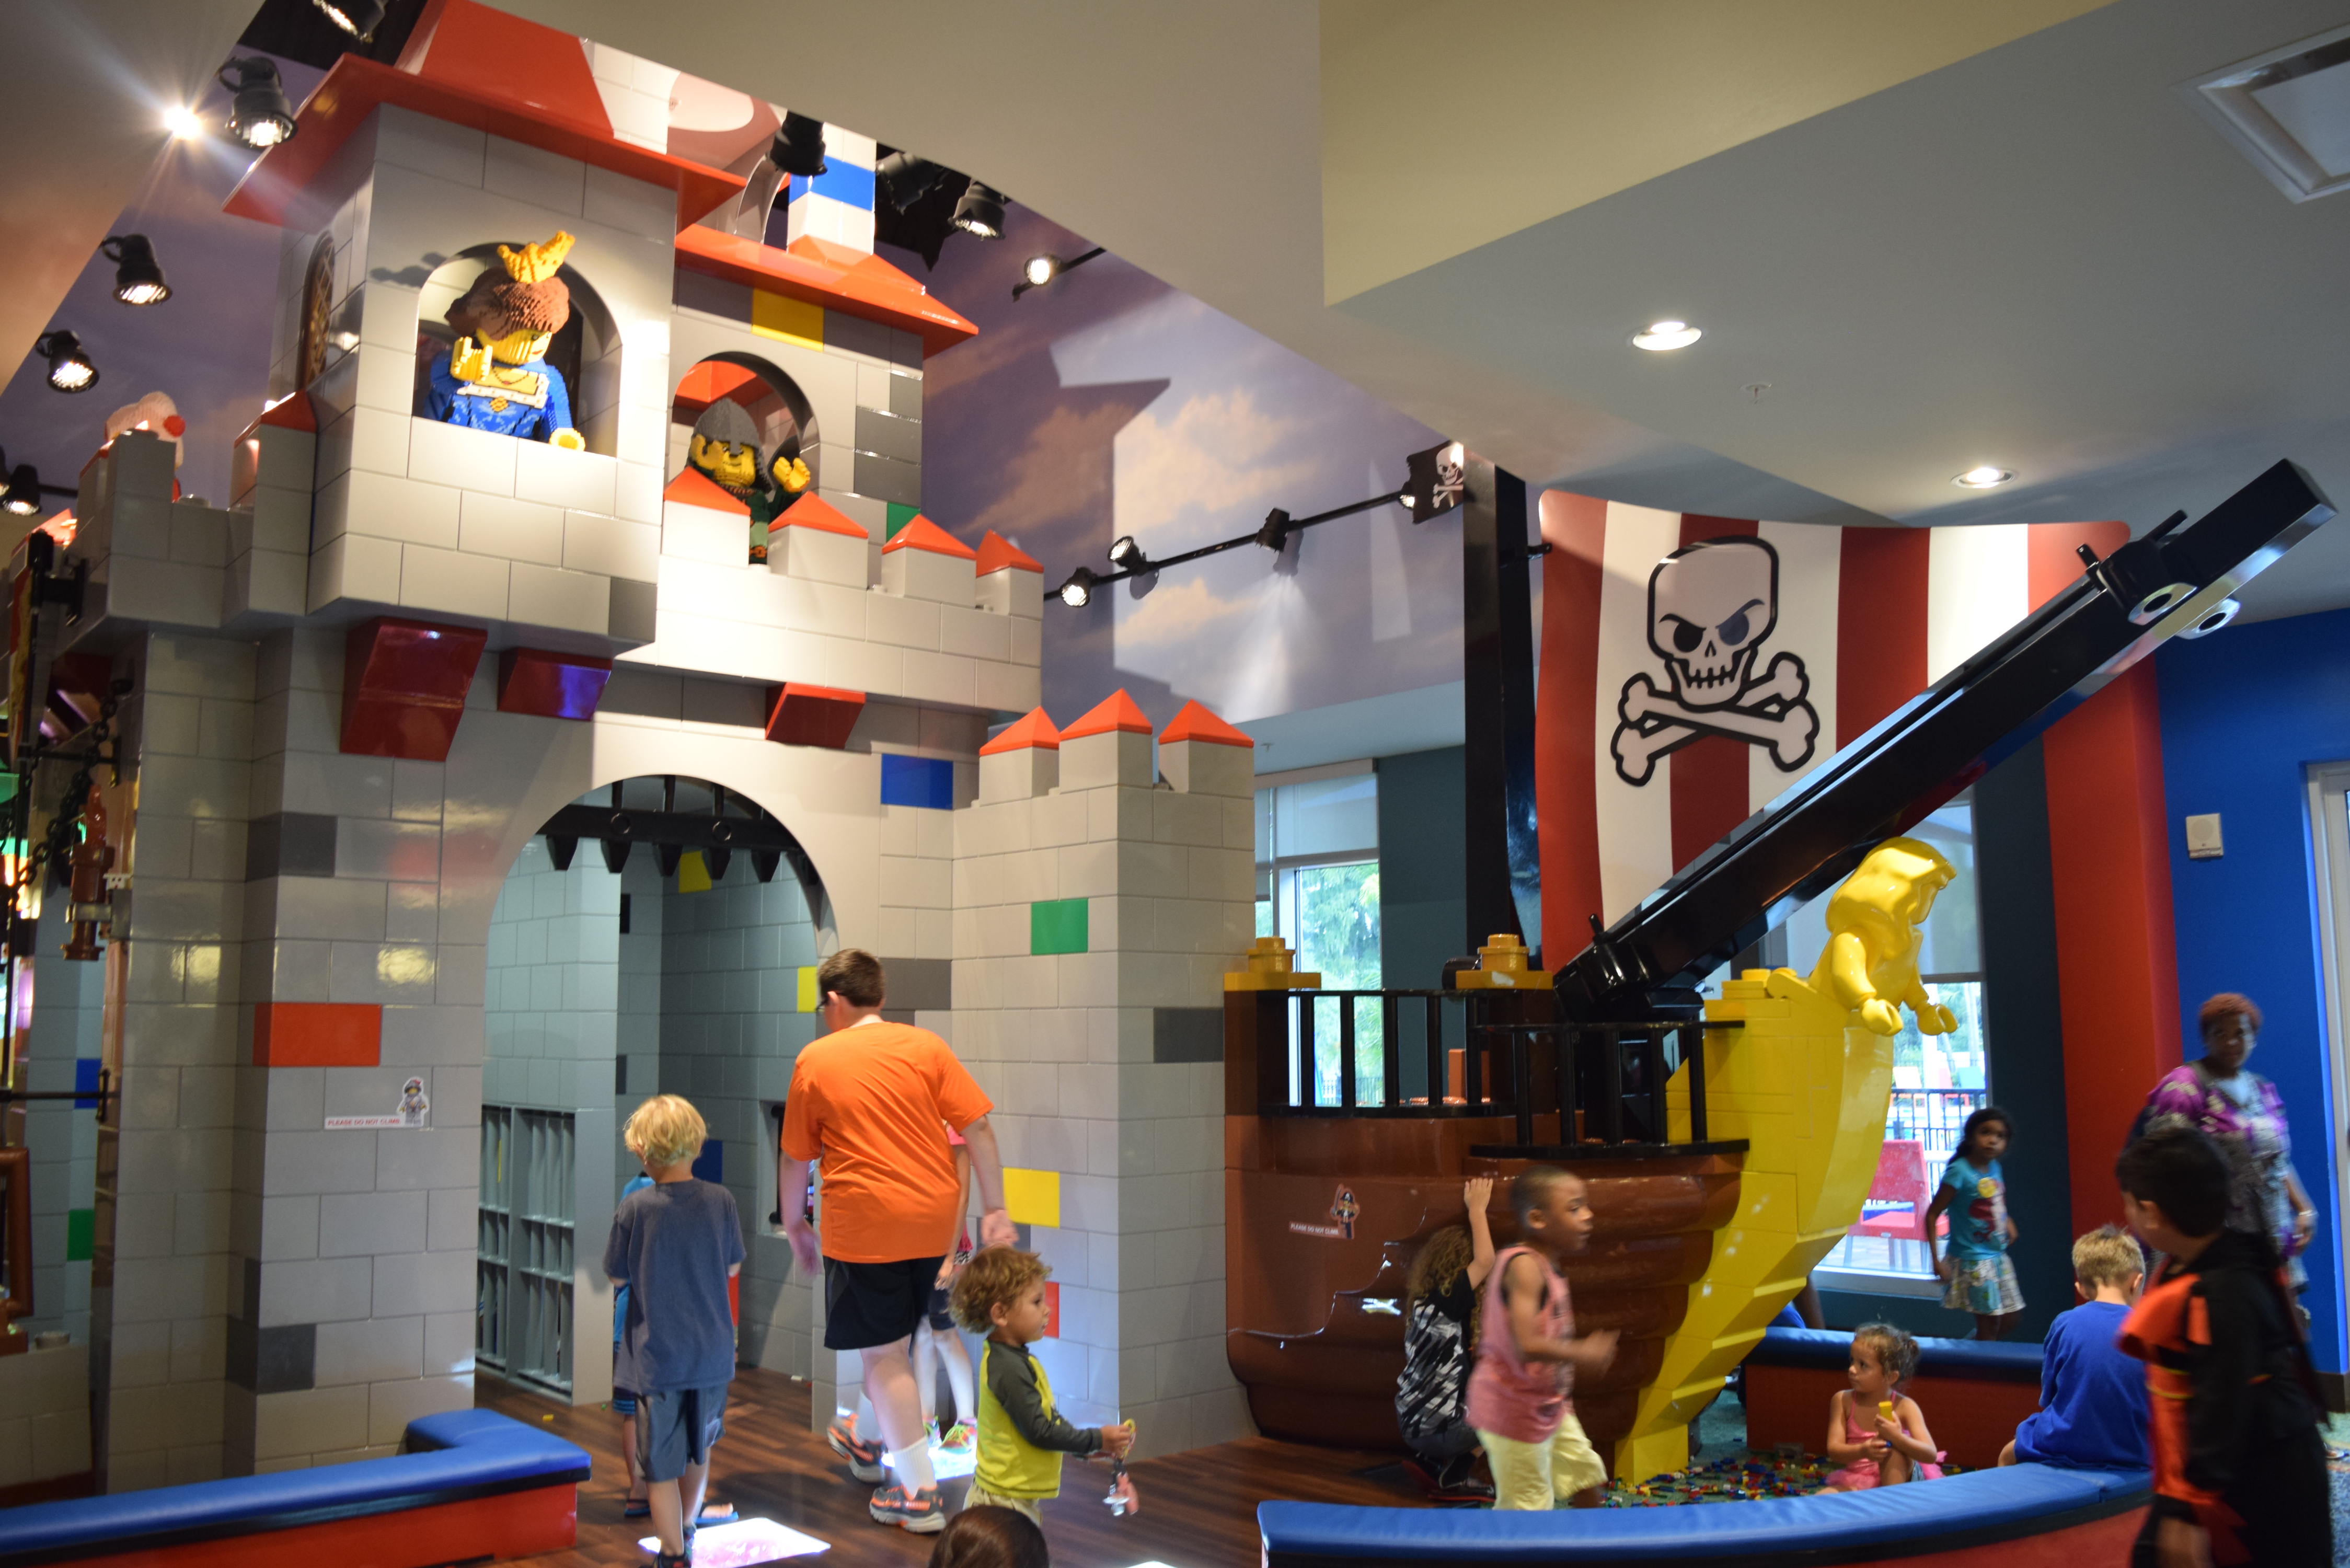 Lobby do hotel - repleto de atrações para as crianças, como cinema, play area e, claro, peças de Lego.